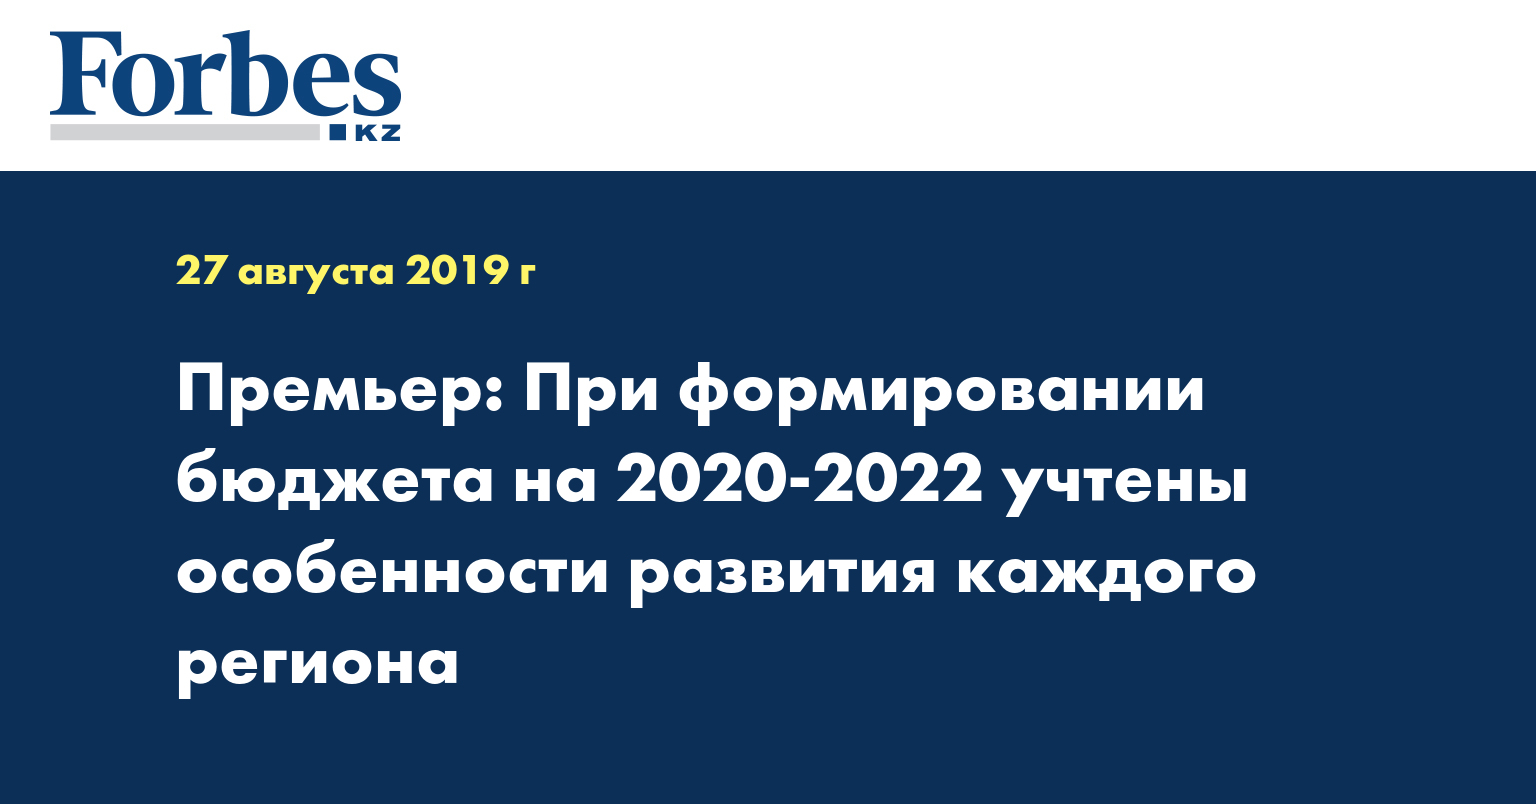 Премьер: При формировании бюджета на 2020-2022 учтены особенности развития каждого региона